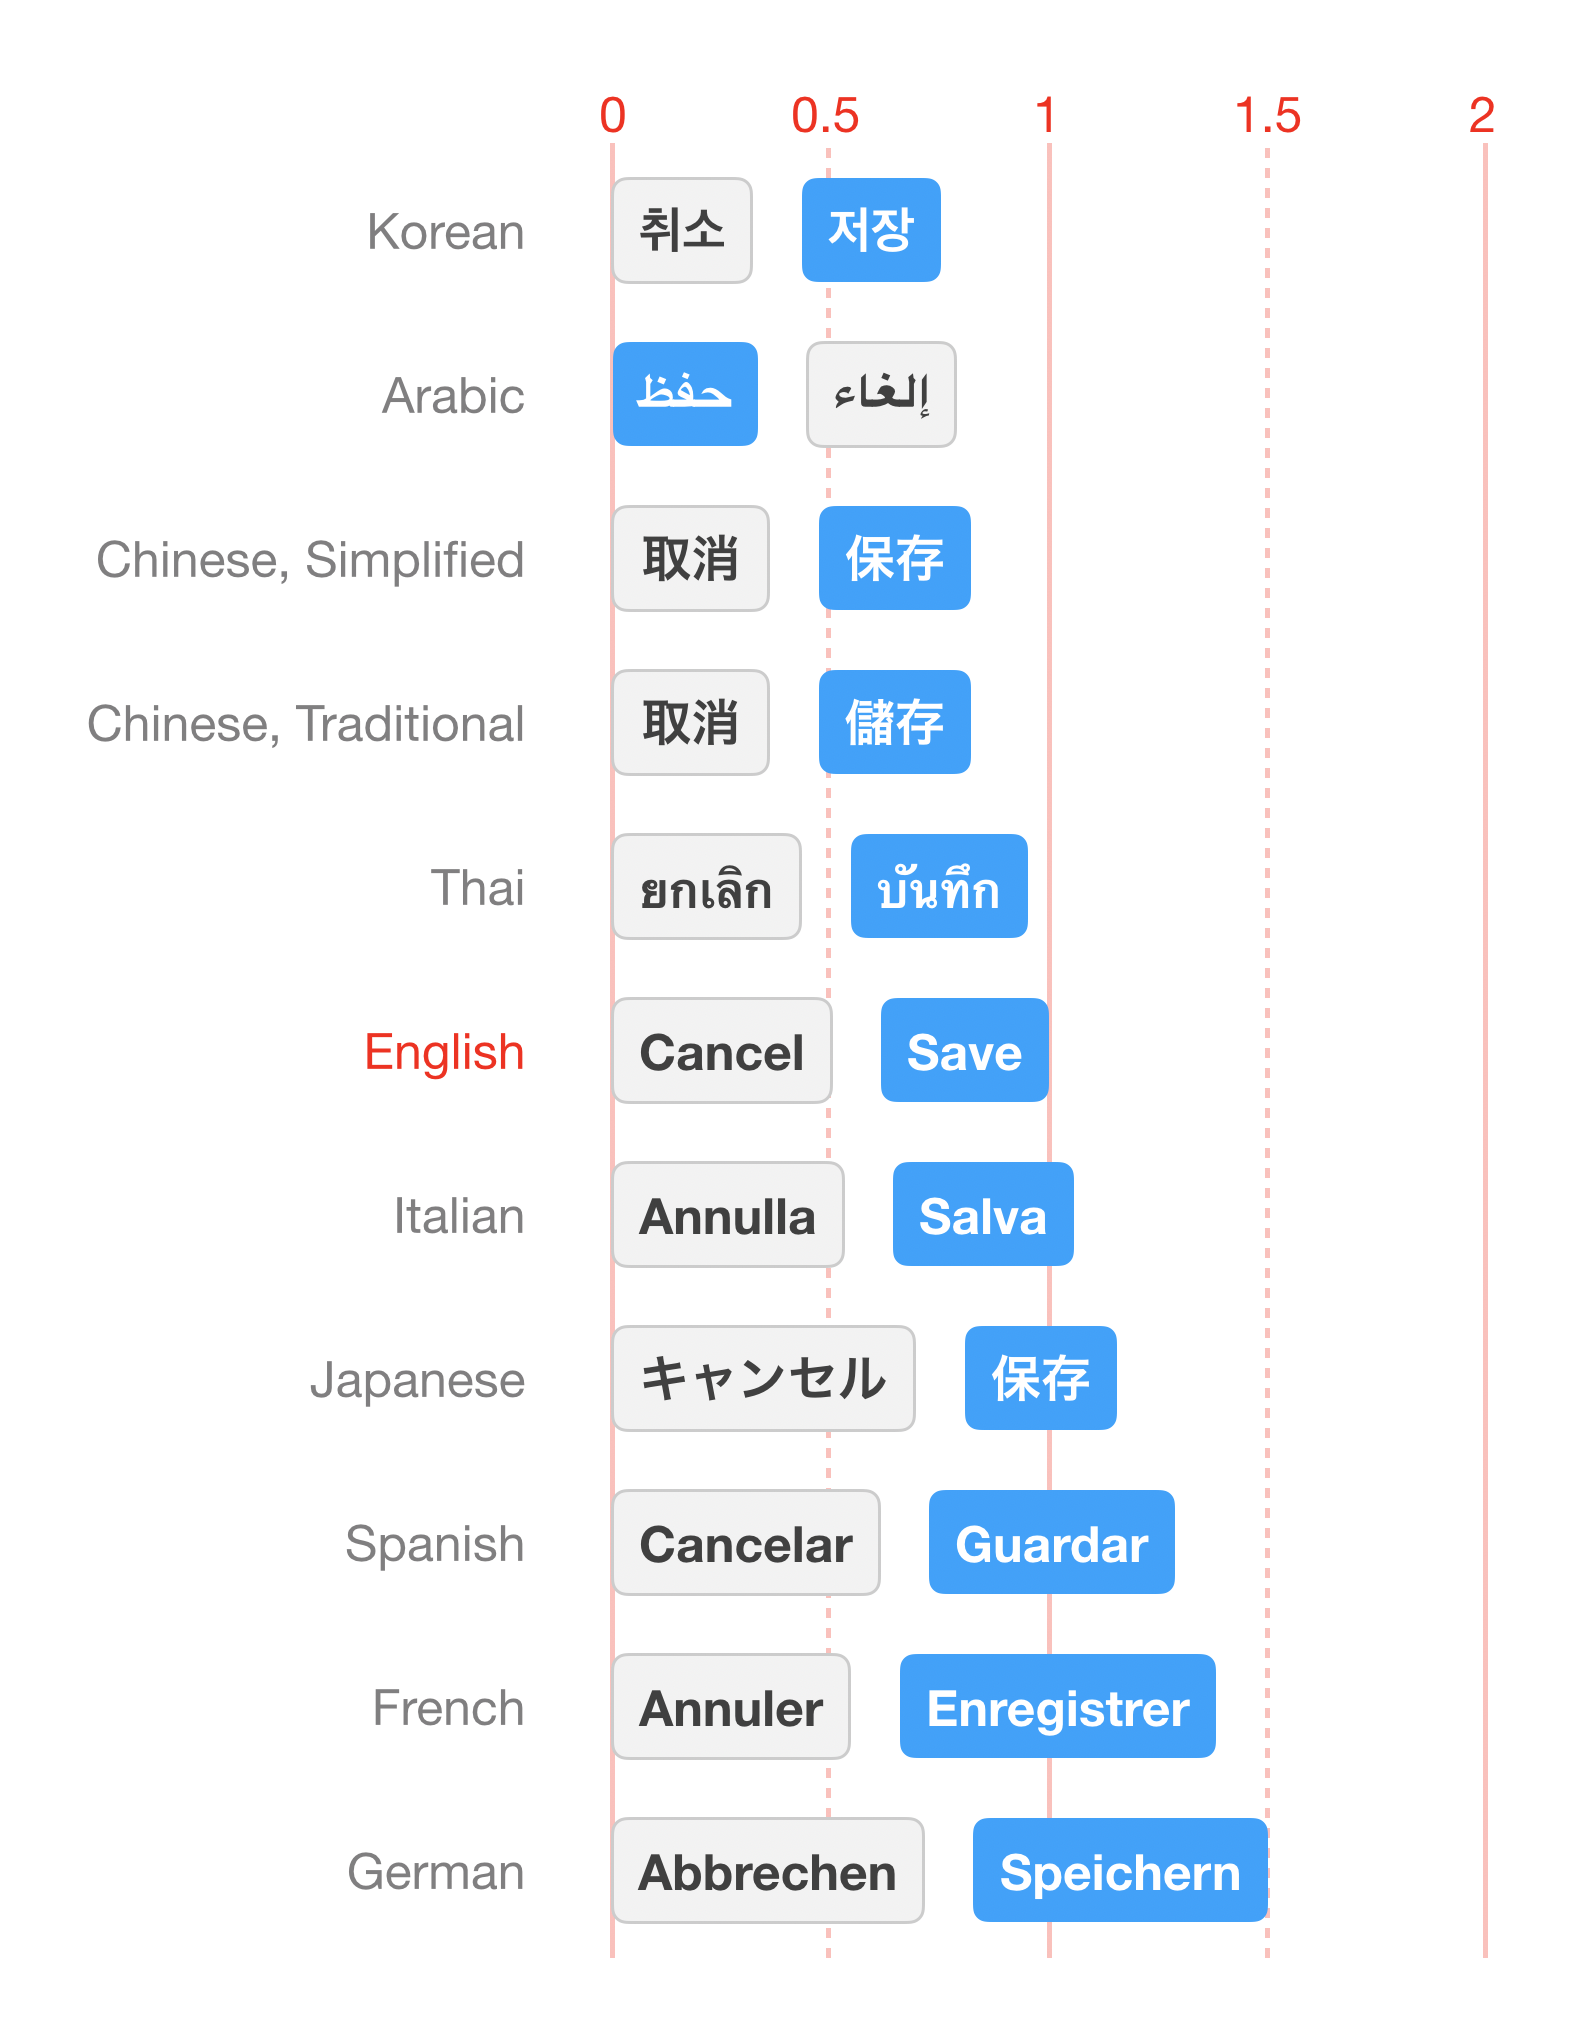 「Cancel」と「Save」のボタンラベルを複数の言語にして並べた場合、英語での長さを1とすると、韓国語は0.75程、ドイツ語は1.5程の長さになることを示した図。